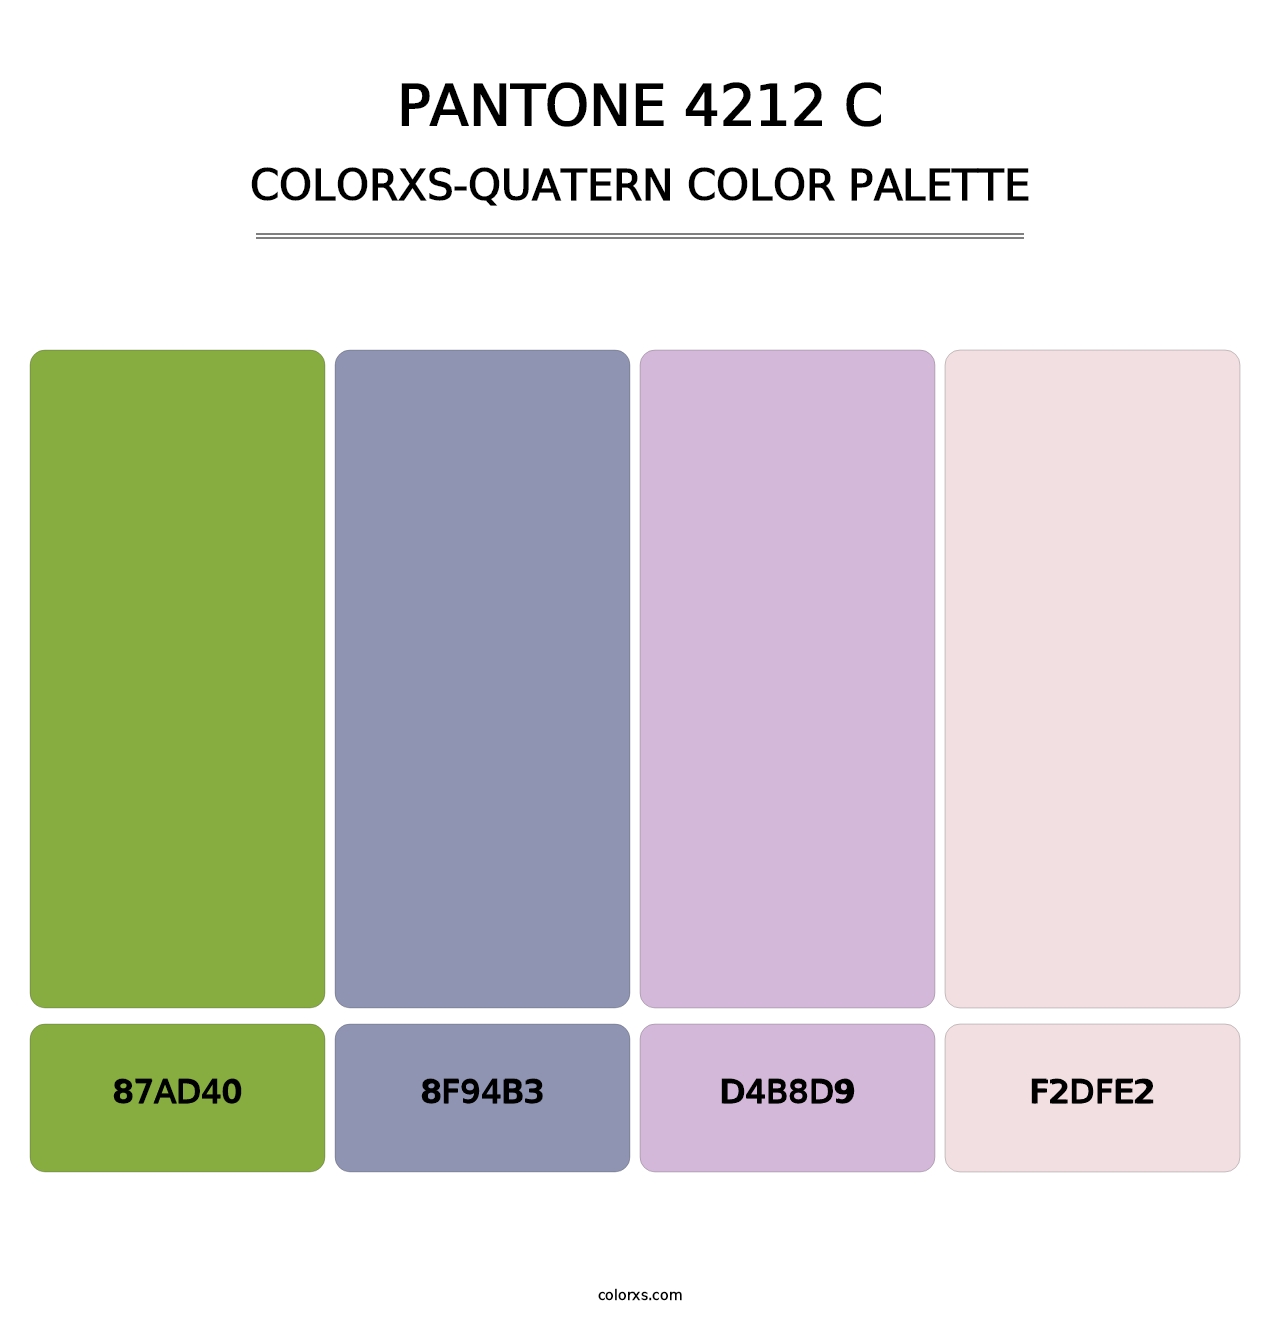 PANTONE 4212 C - Colorxs Quatern Palette